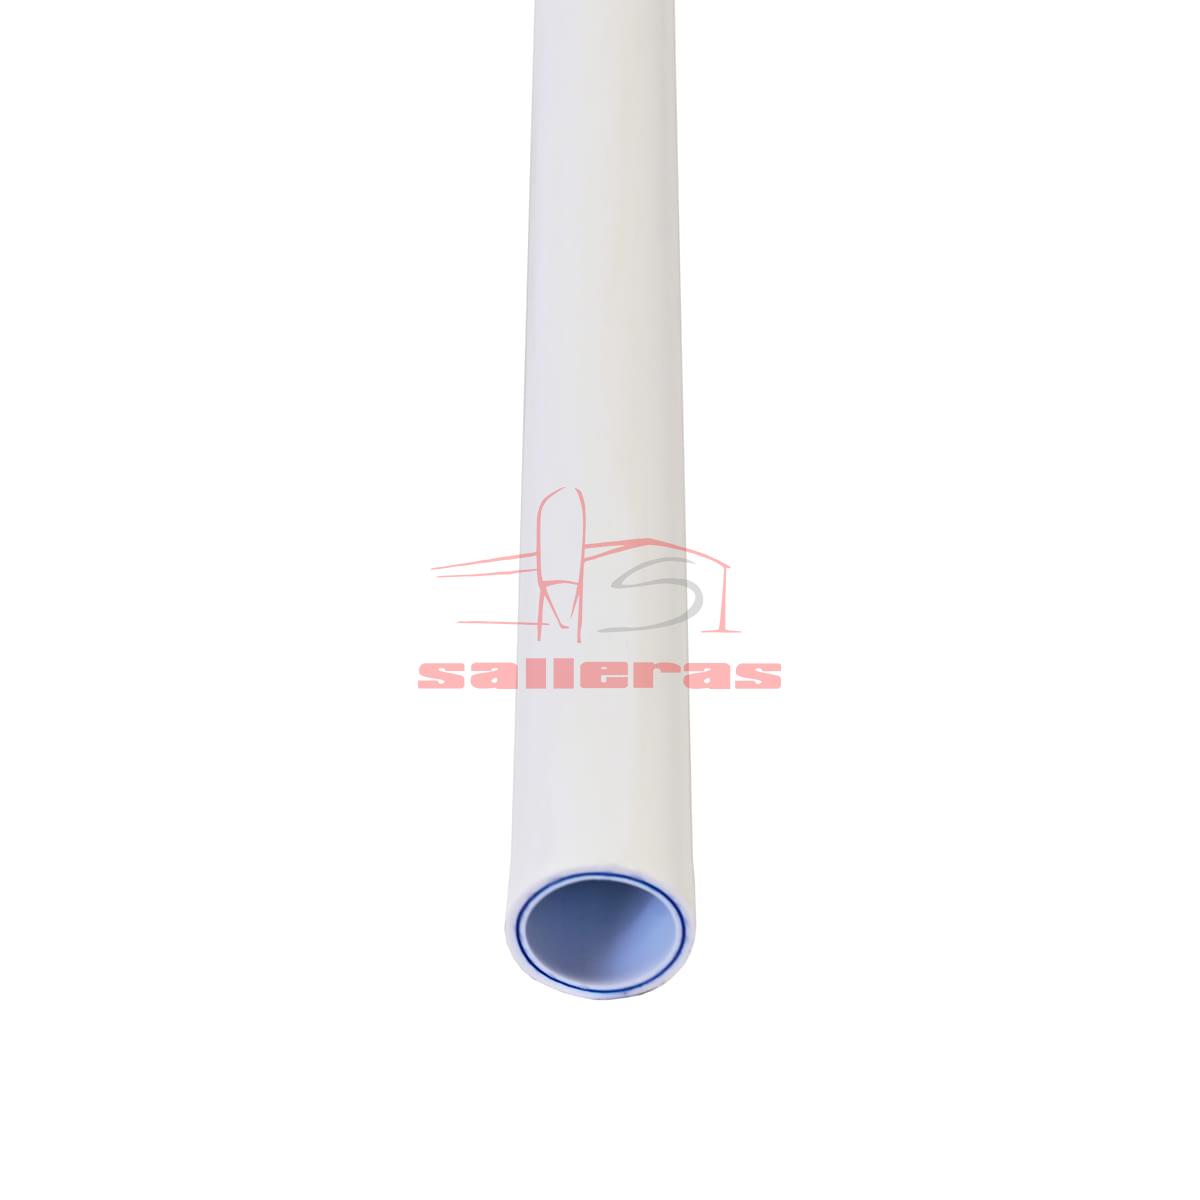 rollo de tubo blanco multicapa en forma de circulo 22 mm reves